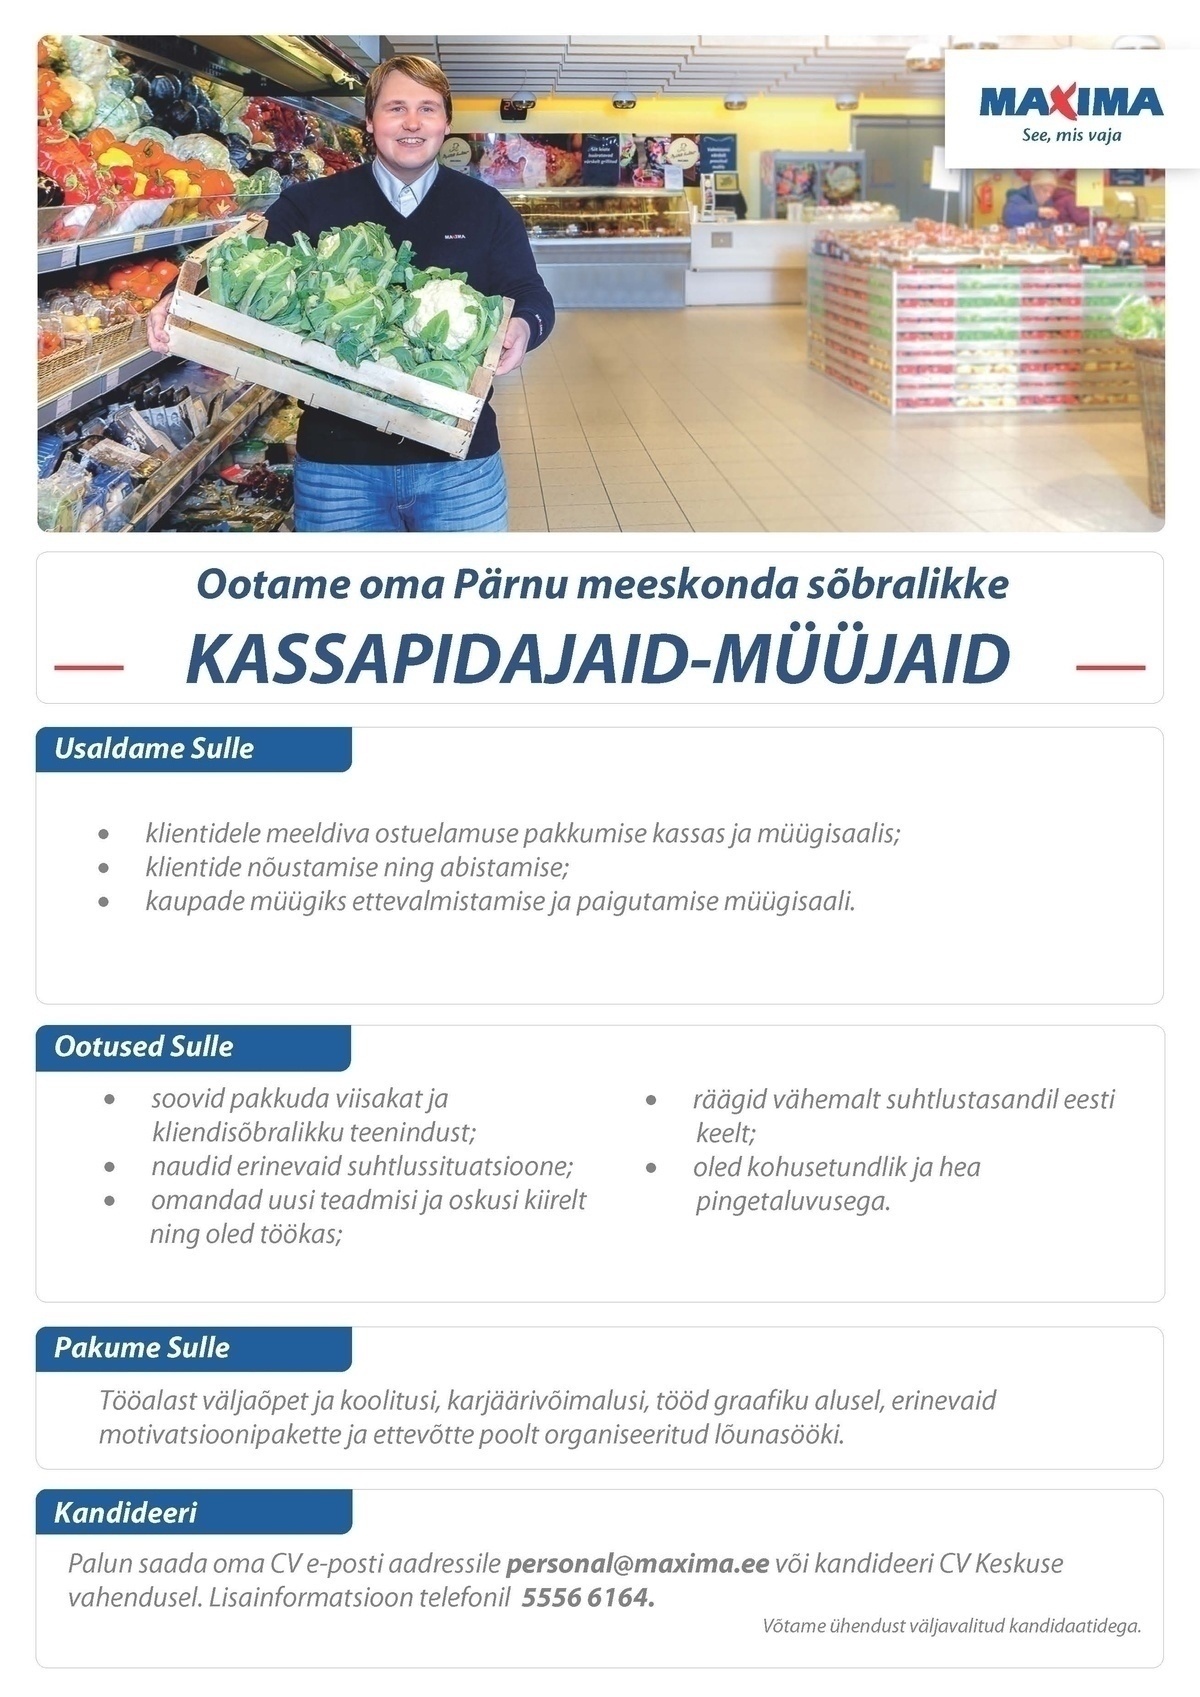 Maxima Eesti OÜ Kassapidaja-müüja Pärnu Maximas